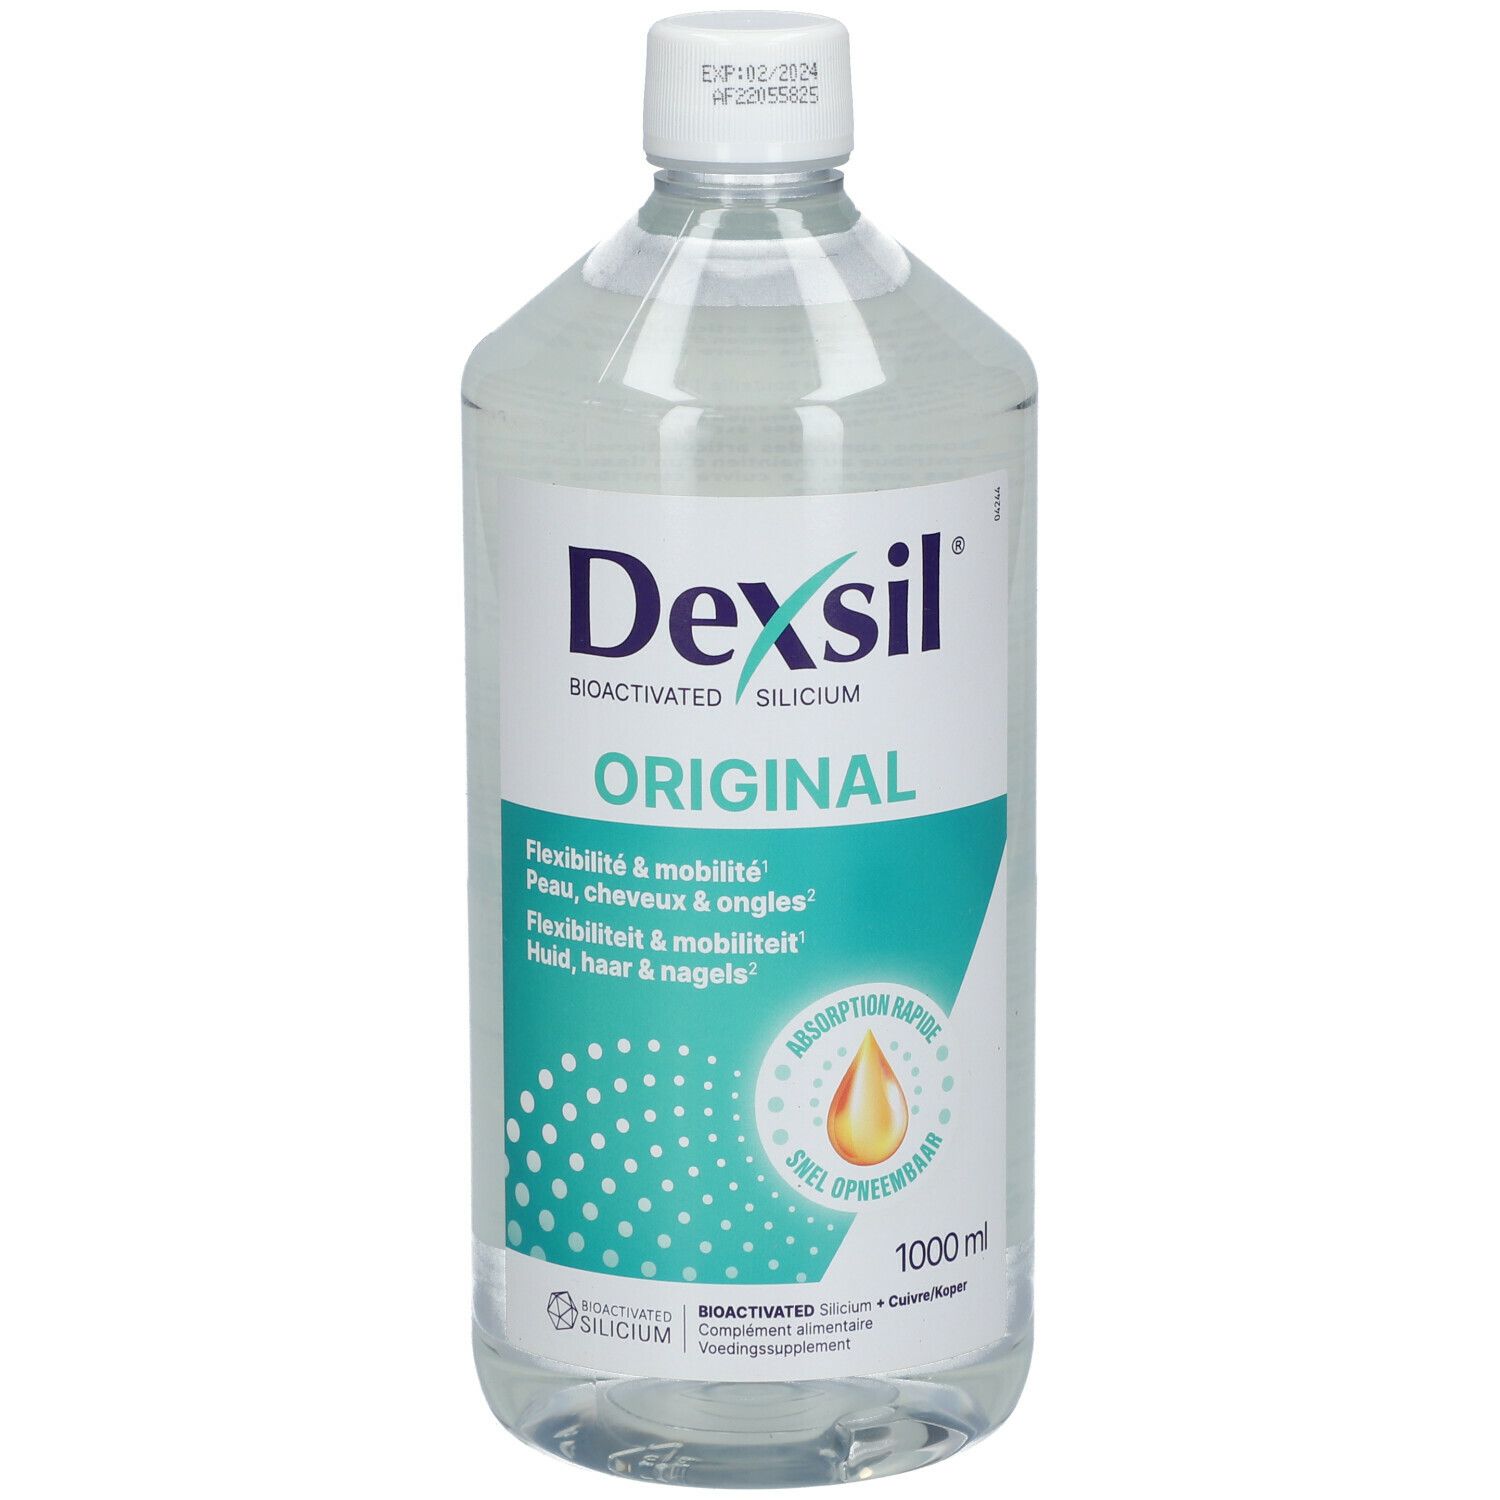 DexSil Original Organic Silicium Bio-Activated